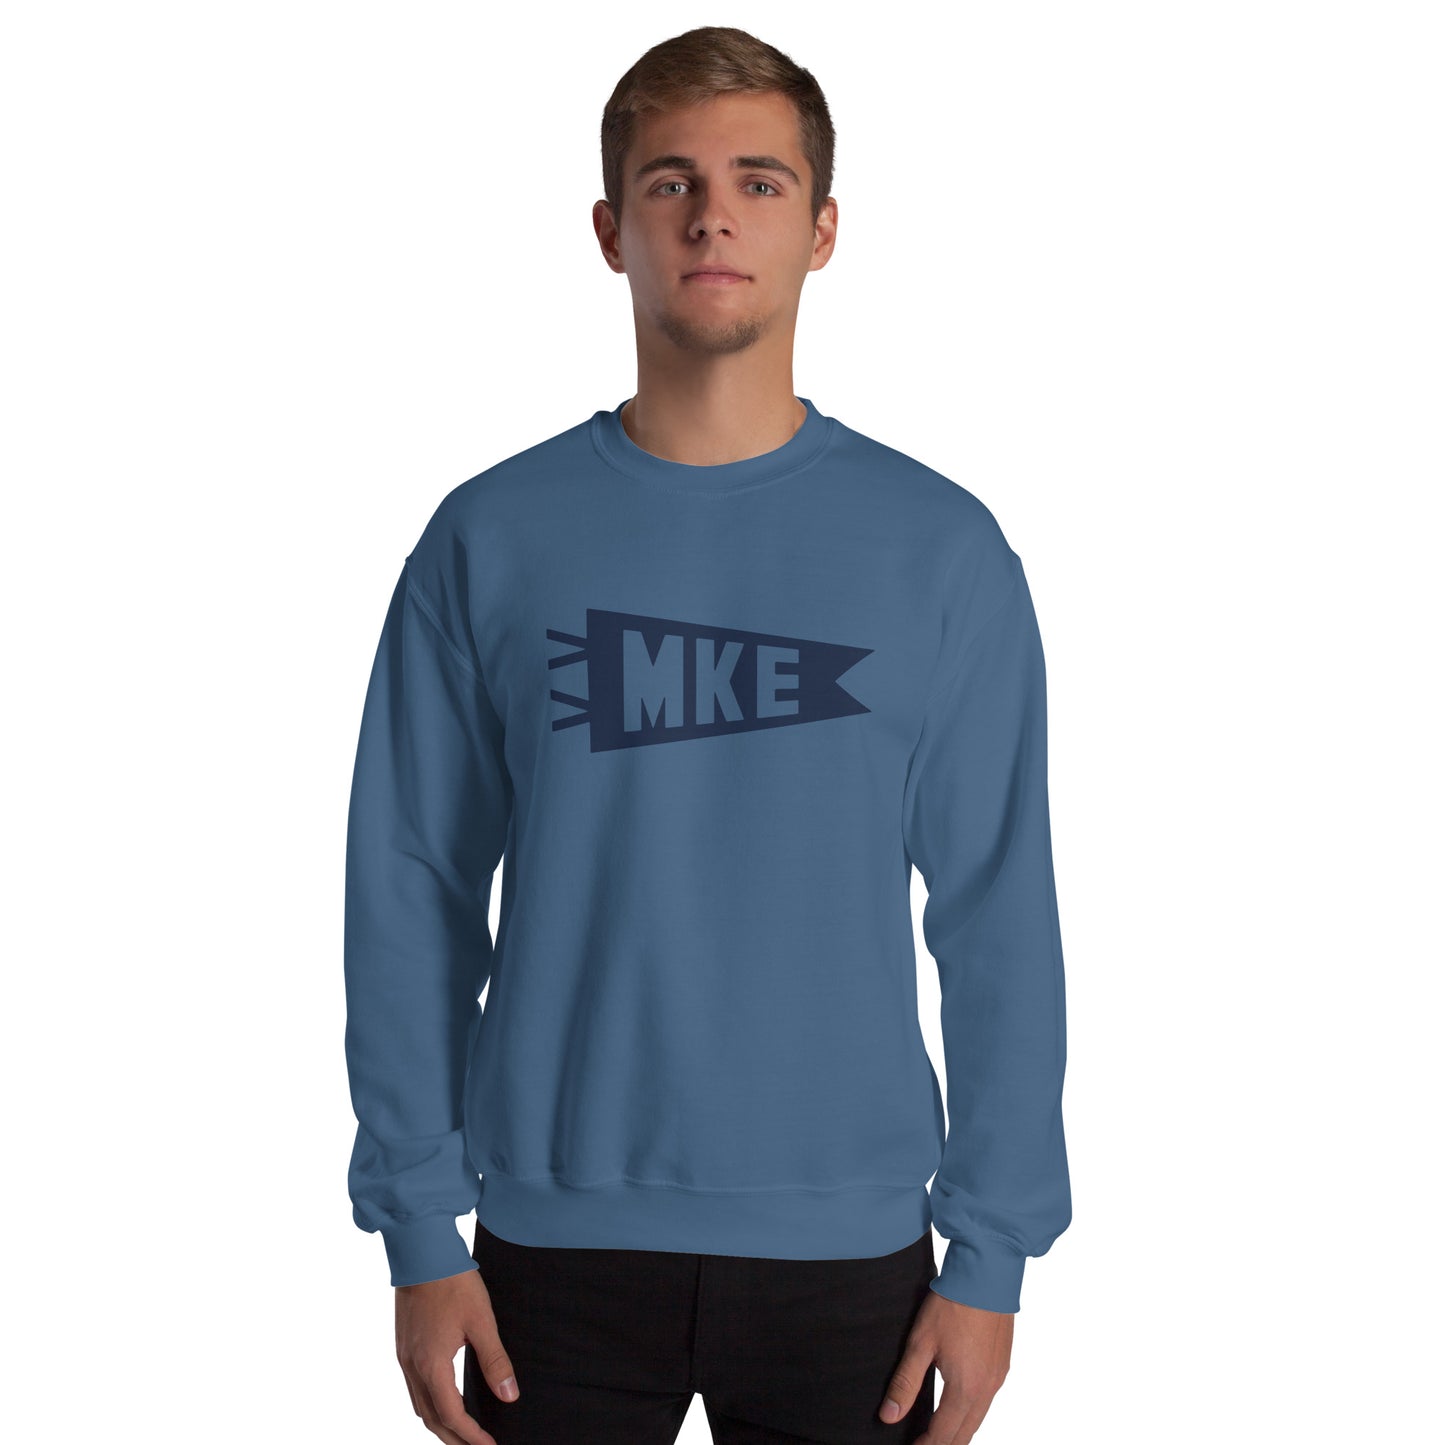 Airport Code Sweatshirt - Navy Blue Graphic • MKE Milwaukee • YHM Designs - Image 06